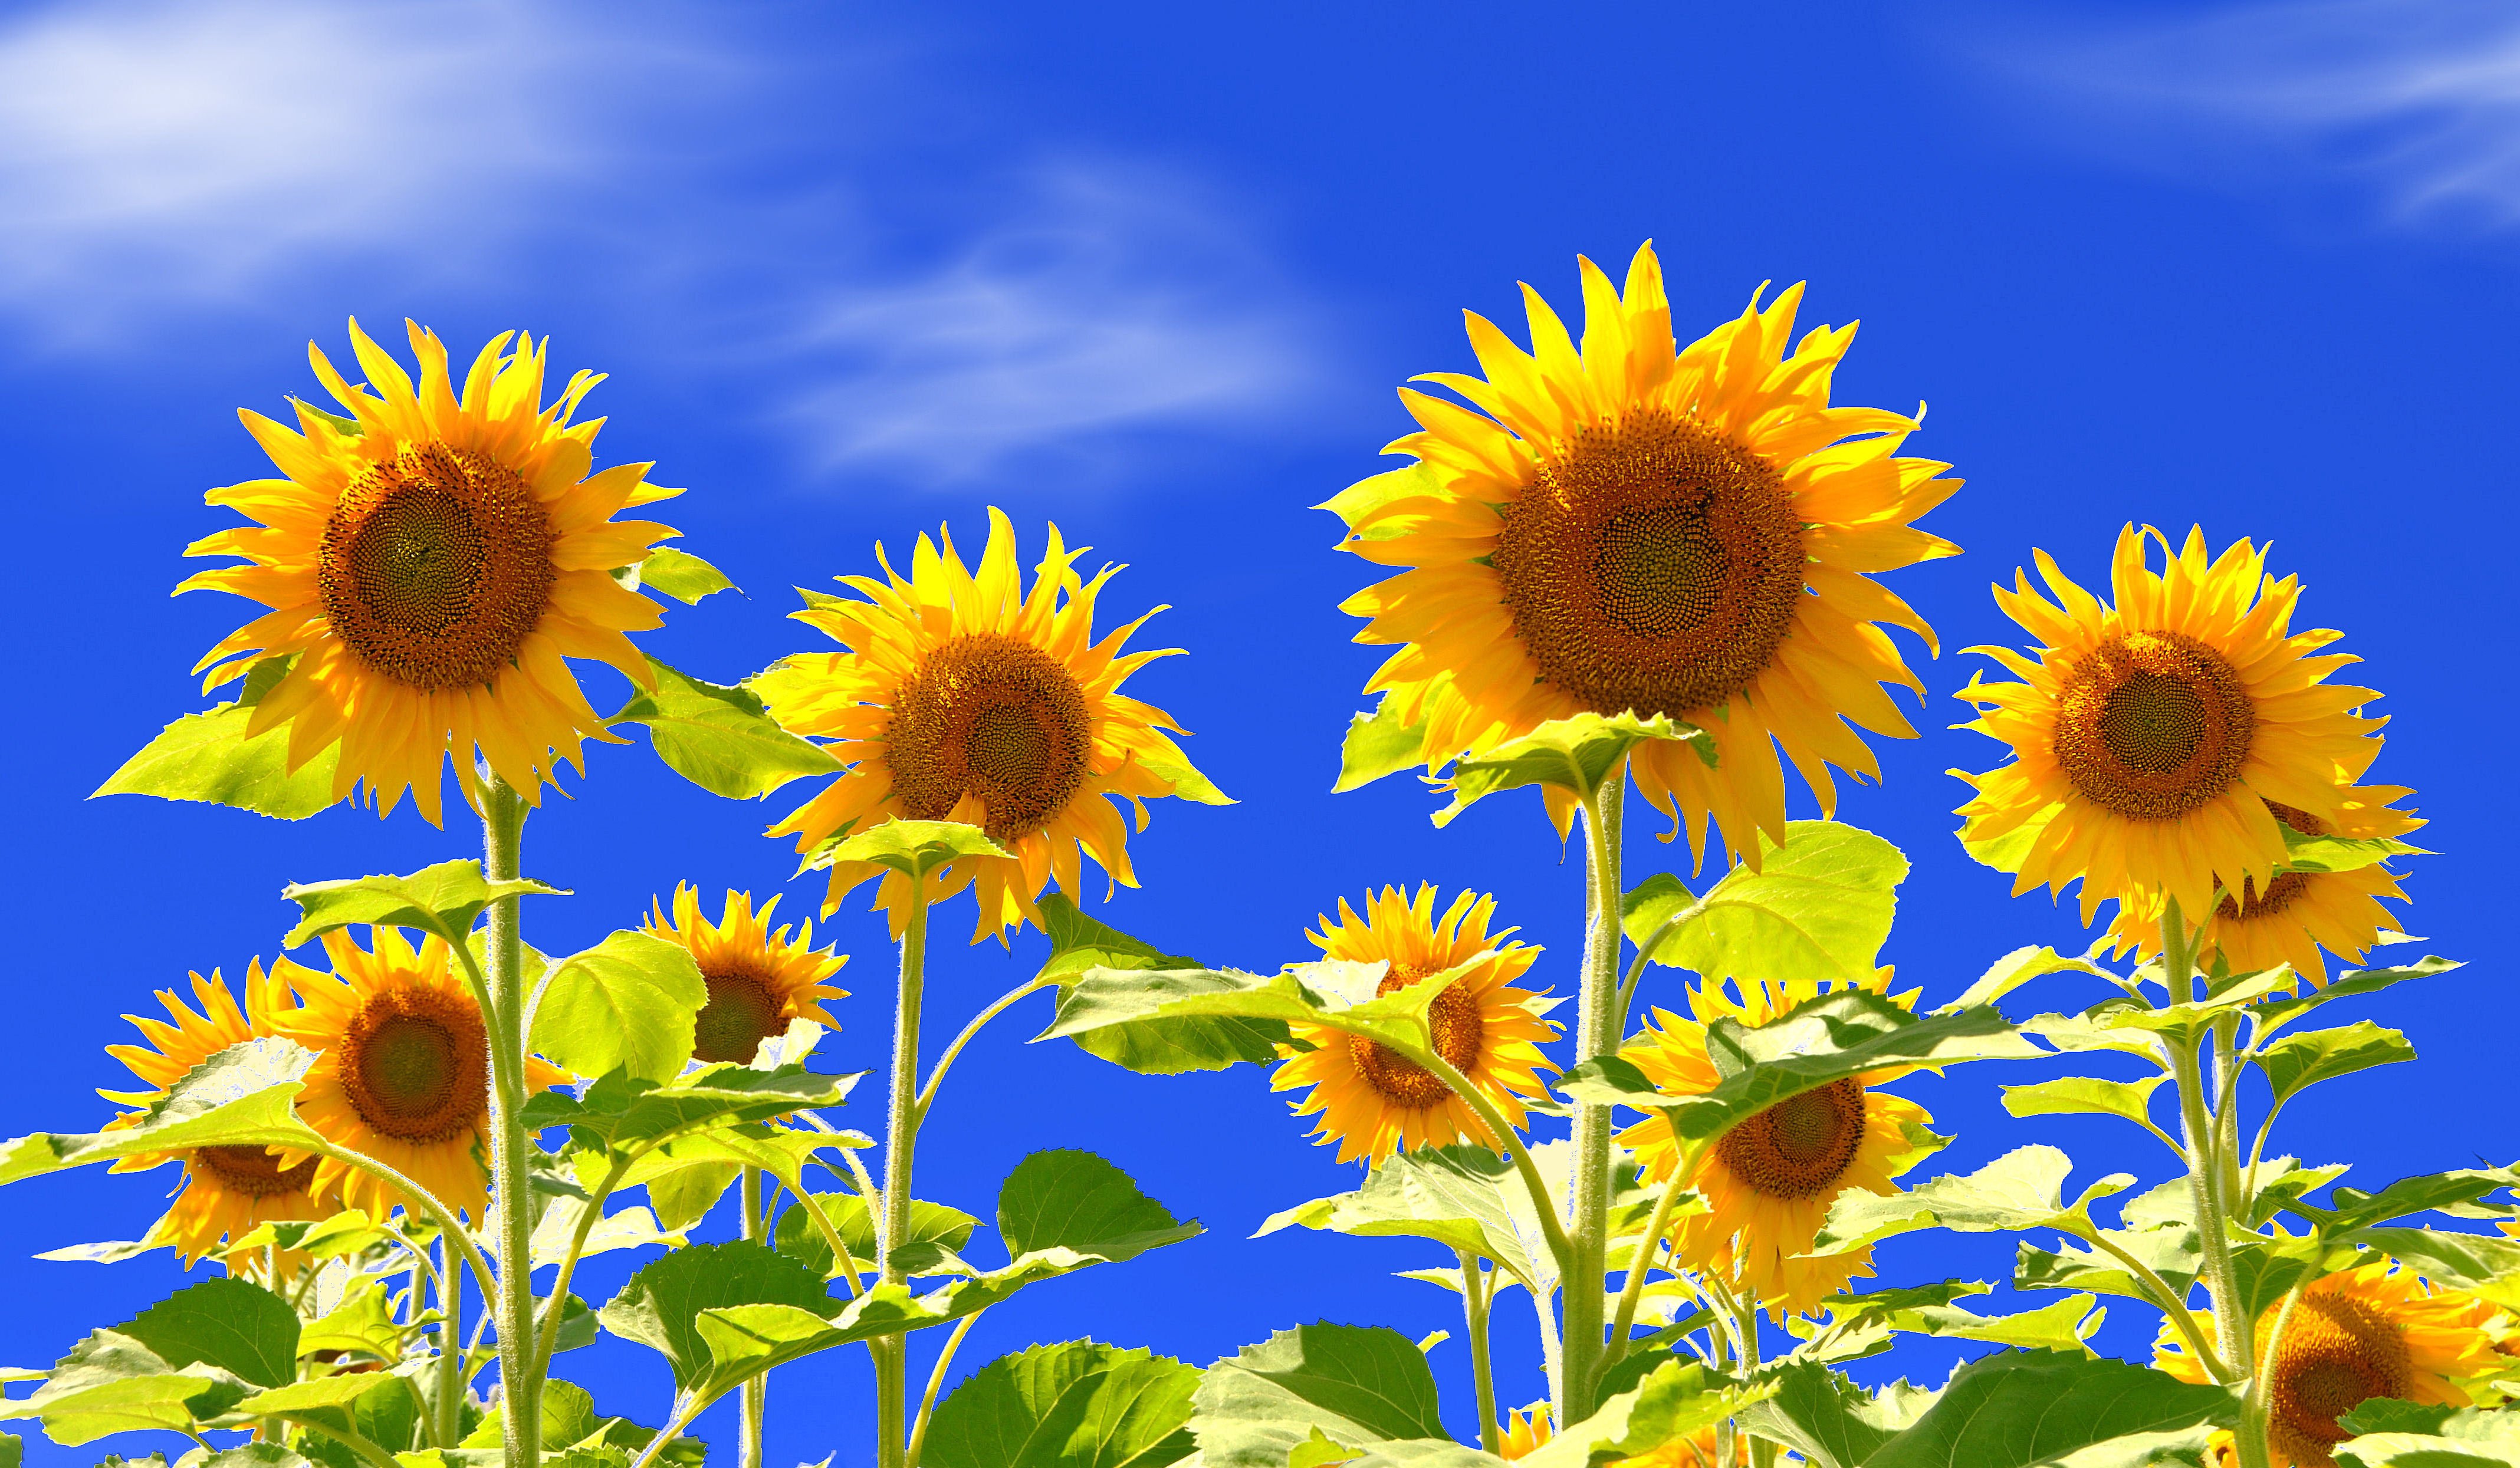 Sunflower Field Wallpaper 23689 - Baltana